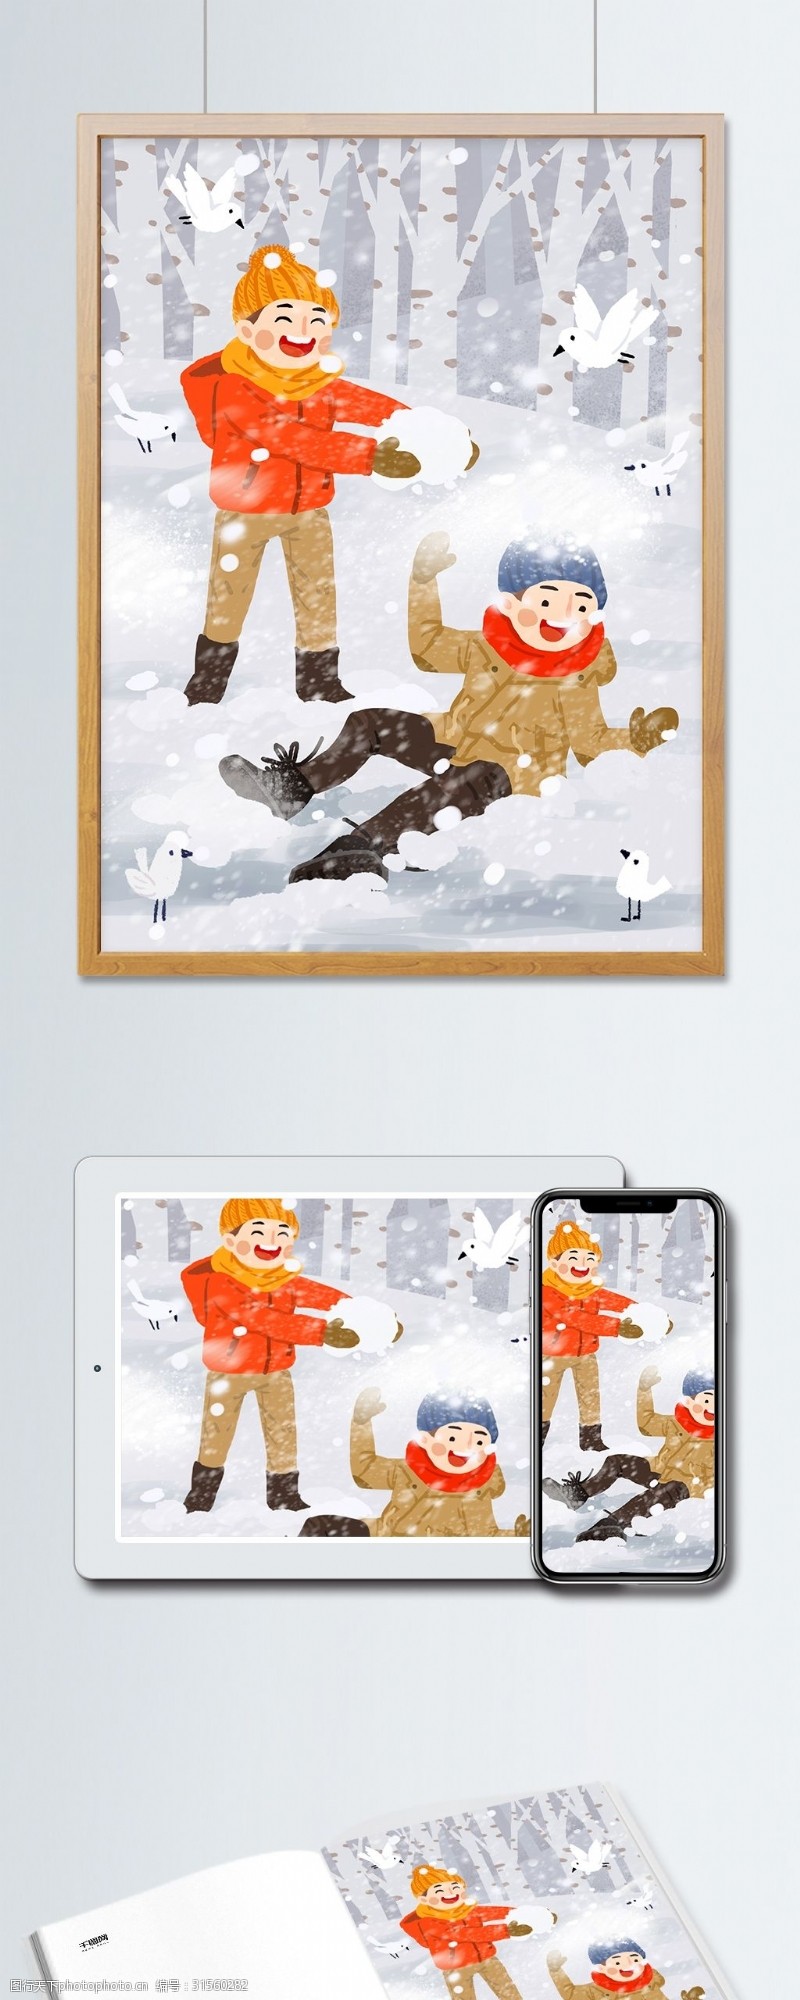 户外玩耍雪地里打雪仗原创手绘插画